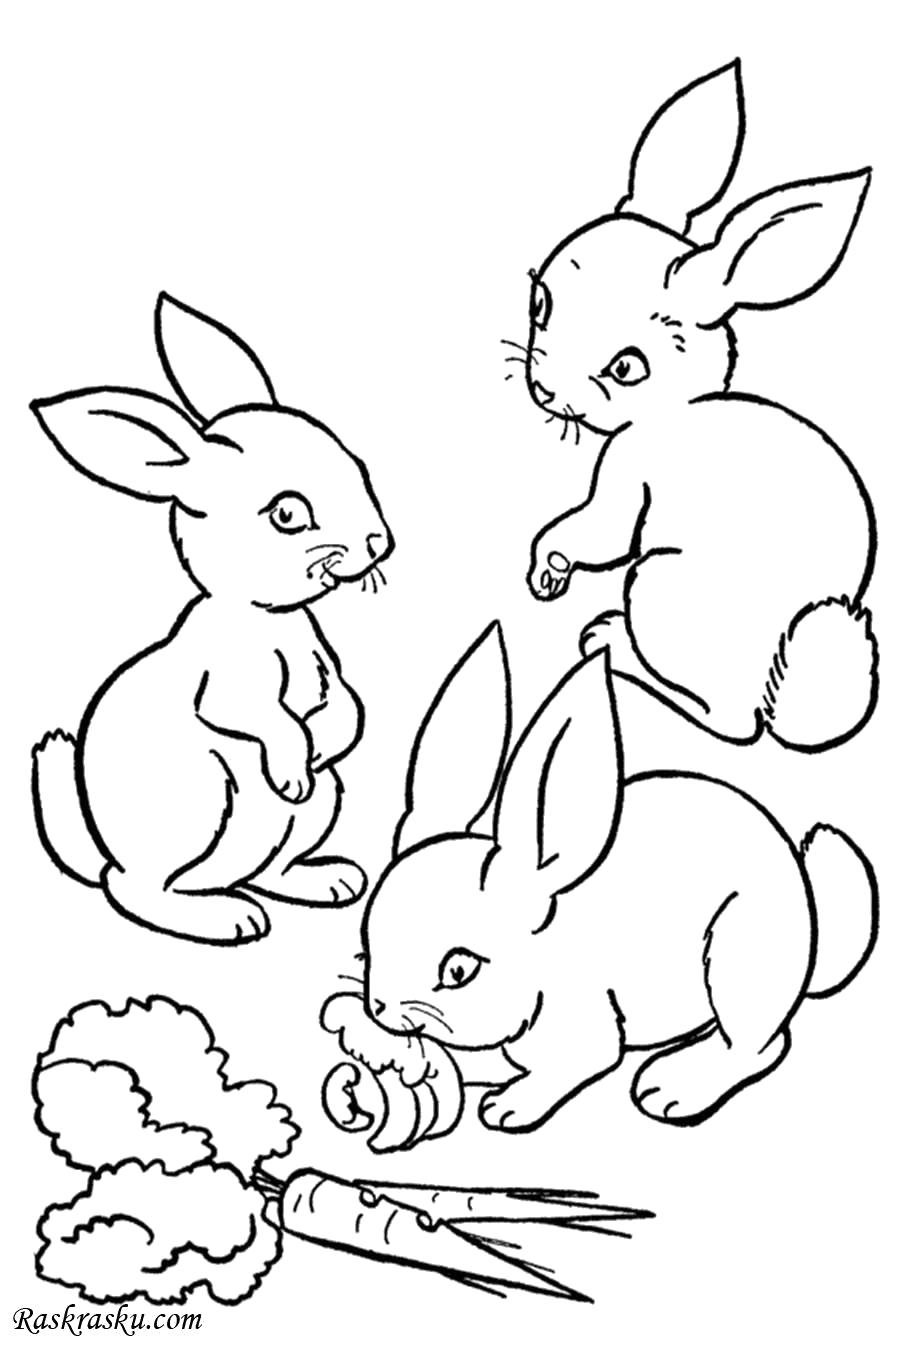 Название: Раскраска Зайчата с морковкой. Категория: Домашние животные. Теги: Заяц.